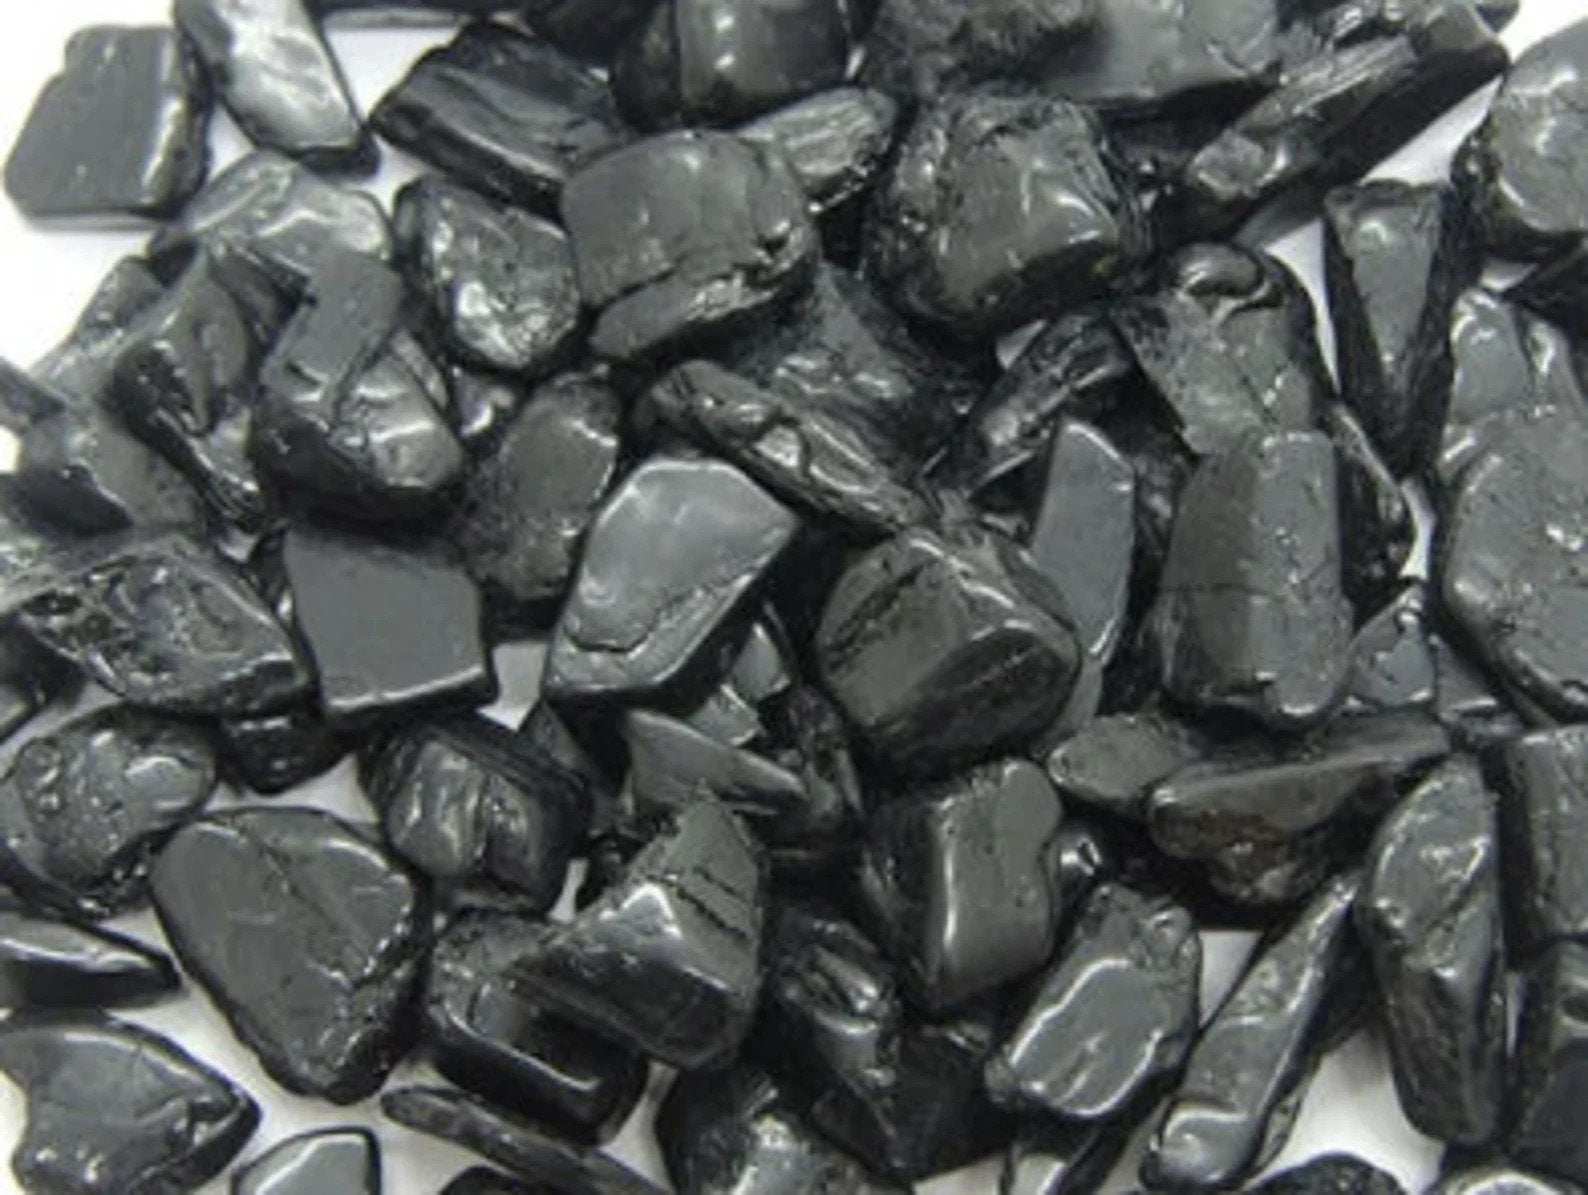 Black Tourmaline Natural Crystals